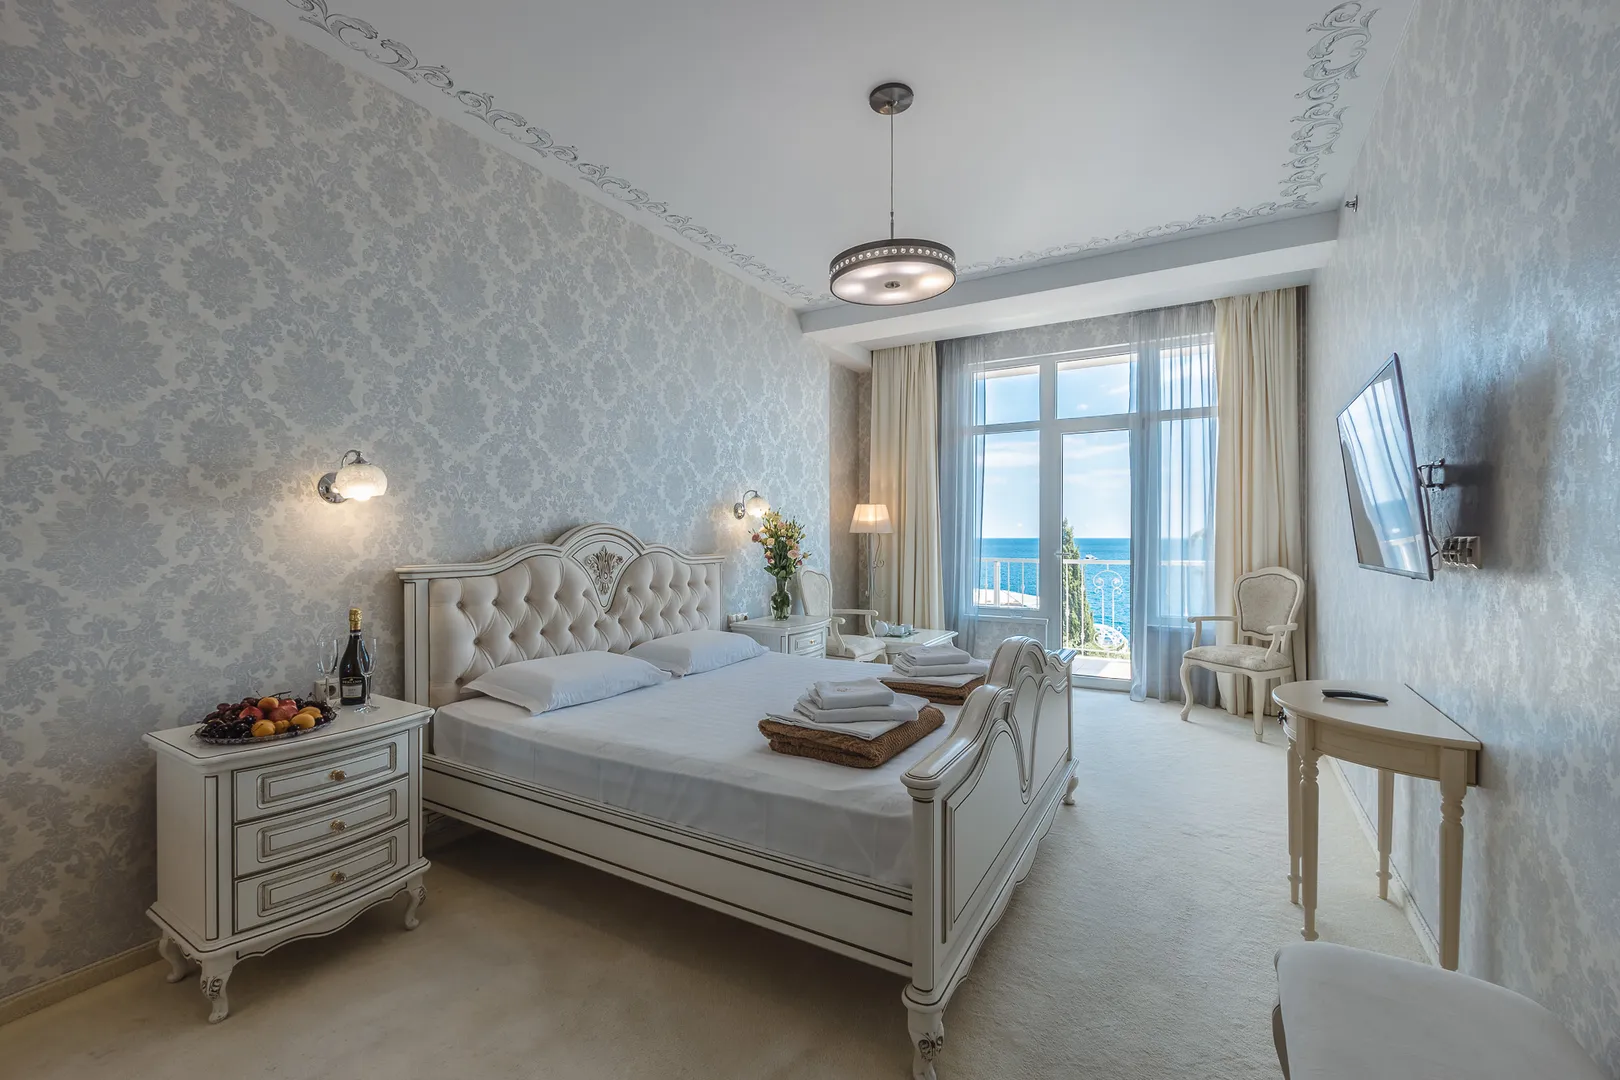 Спальня с видом на море